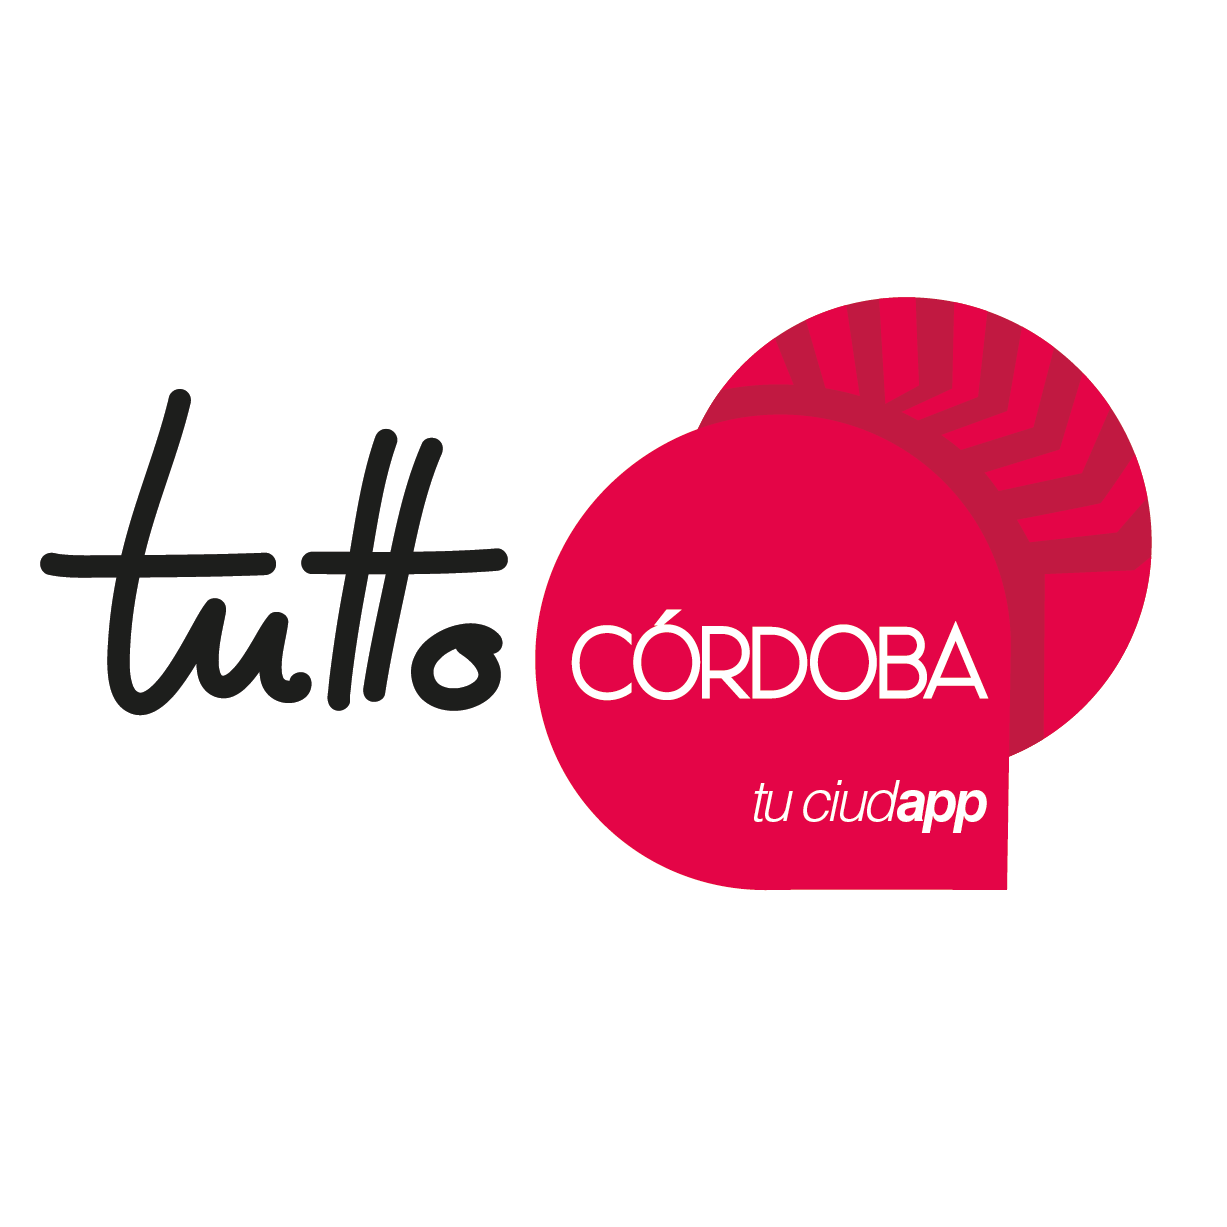 Primera y única guía app integral para Córdoba y provincia. Disponible en varios idiomas. Descárgala gratis en Google Play, App Store & Window Phone